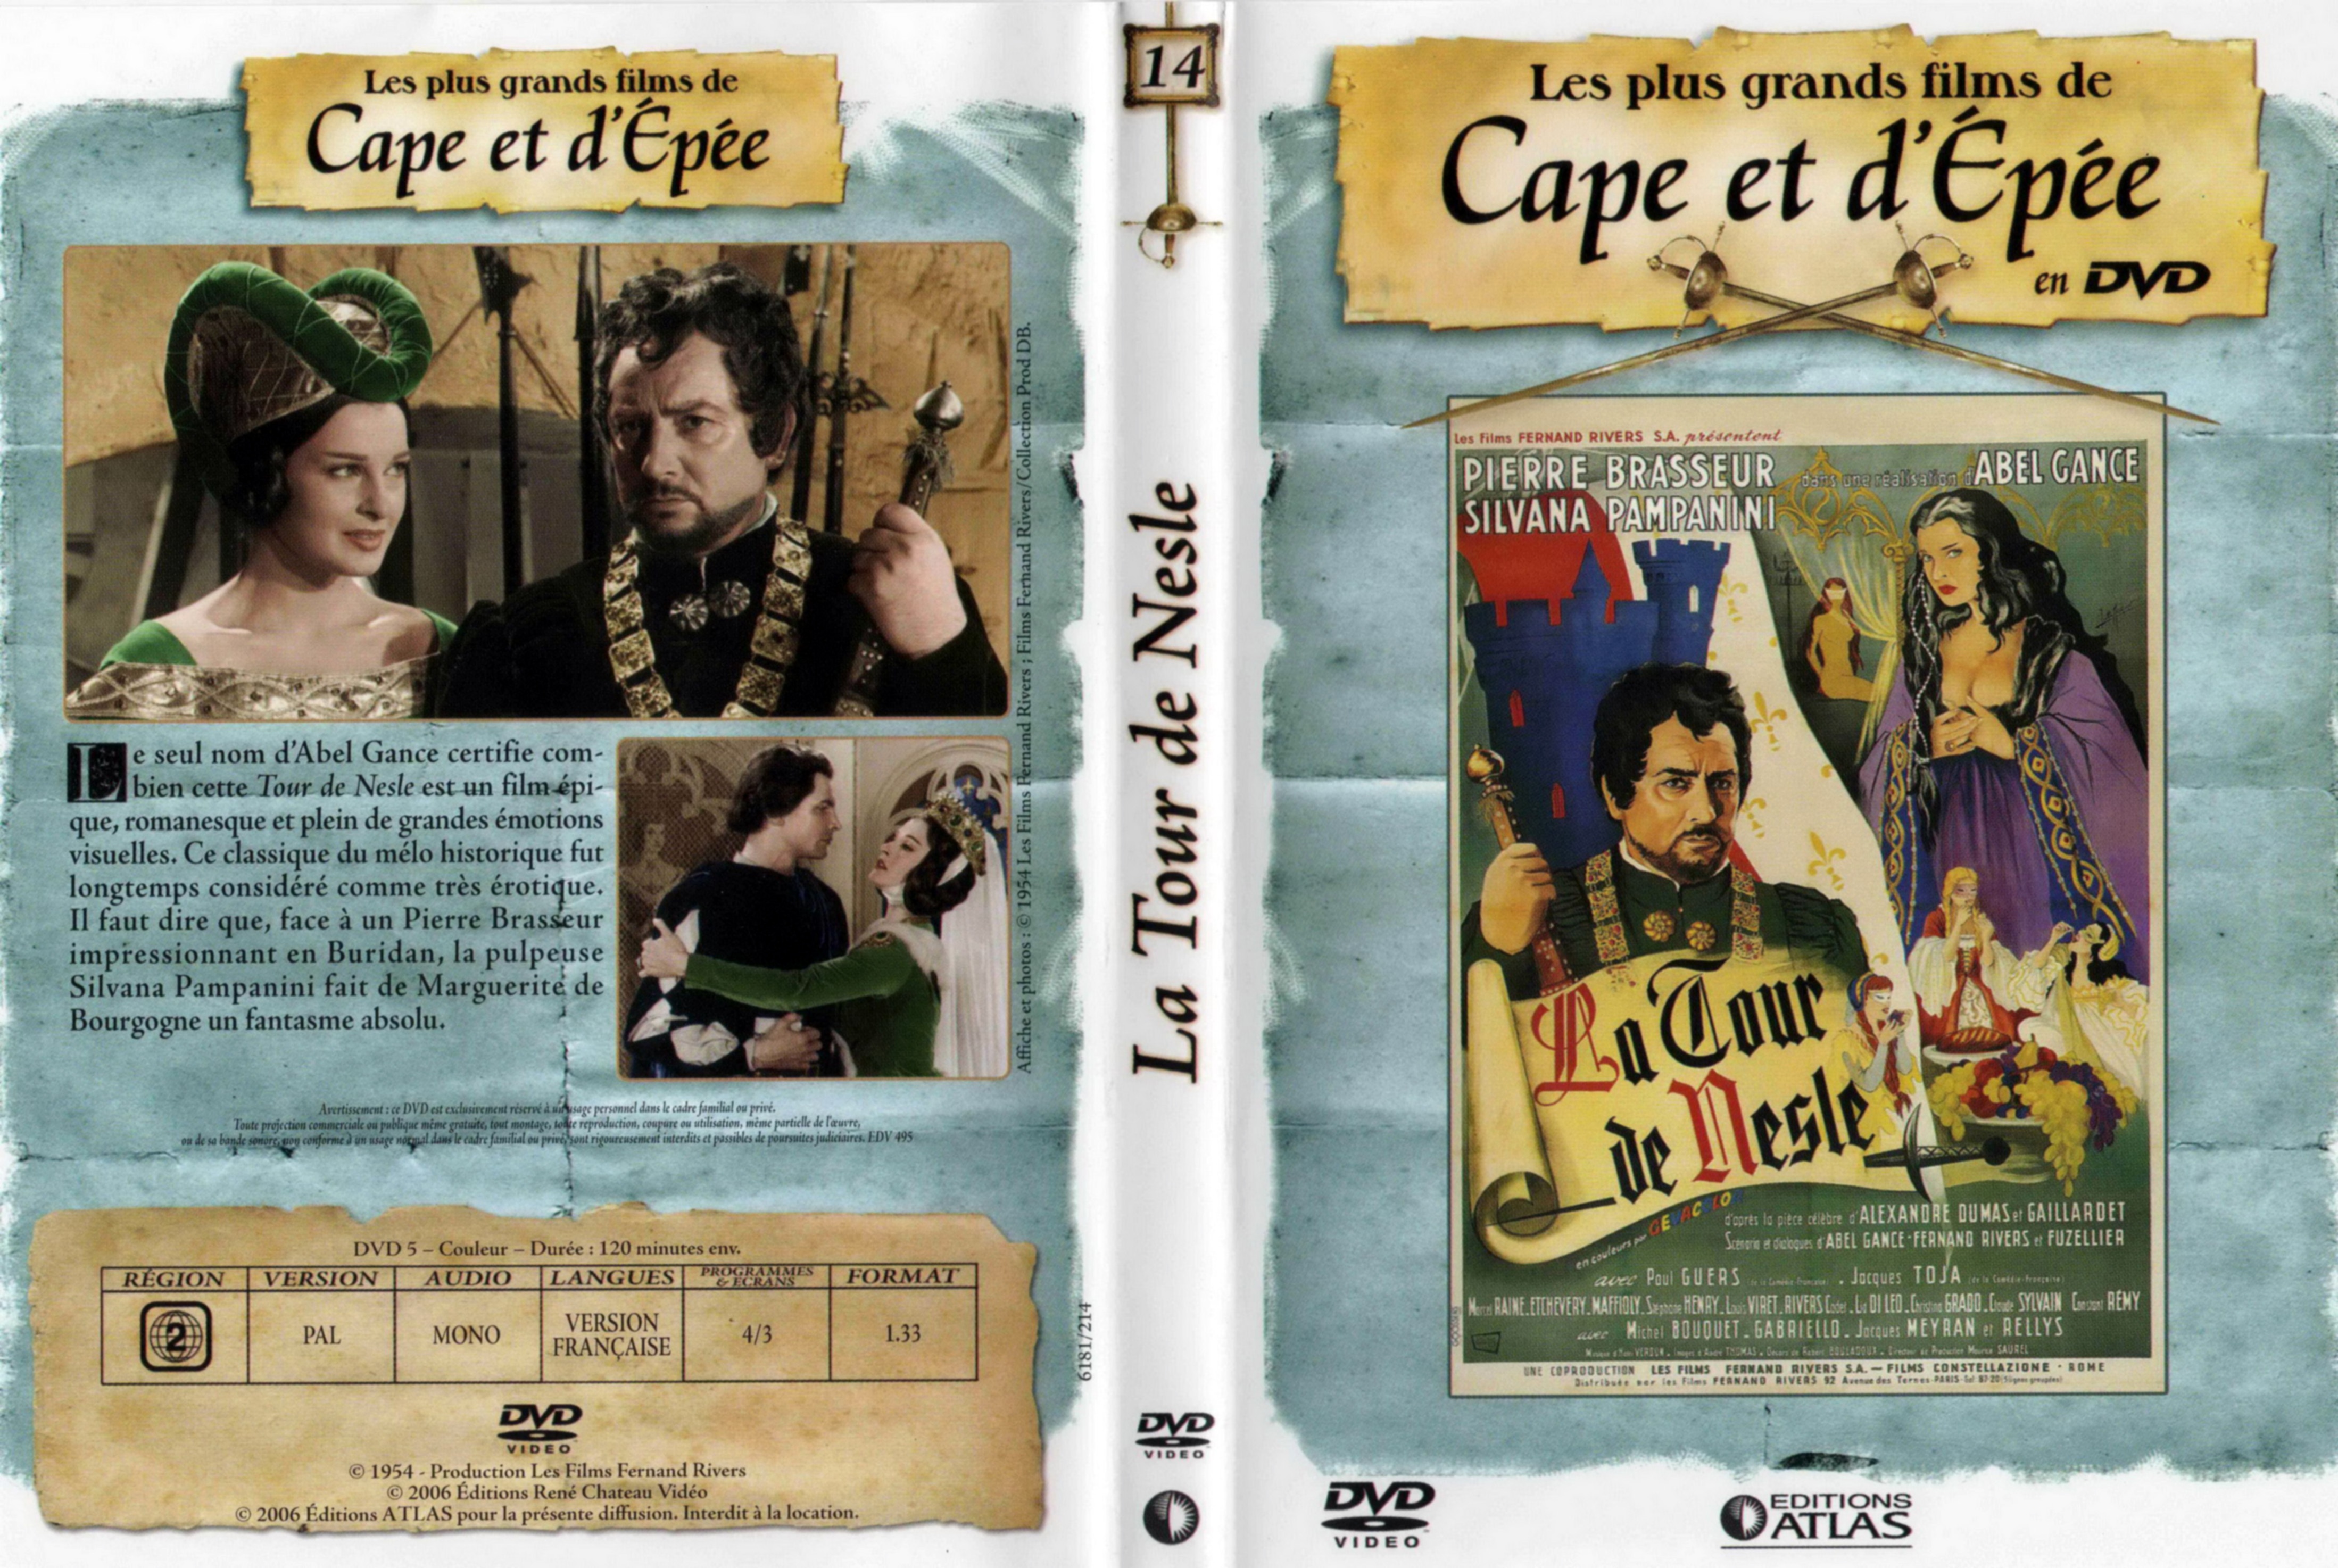 Jaquette DVD La tour de Nesle v2